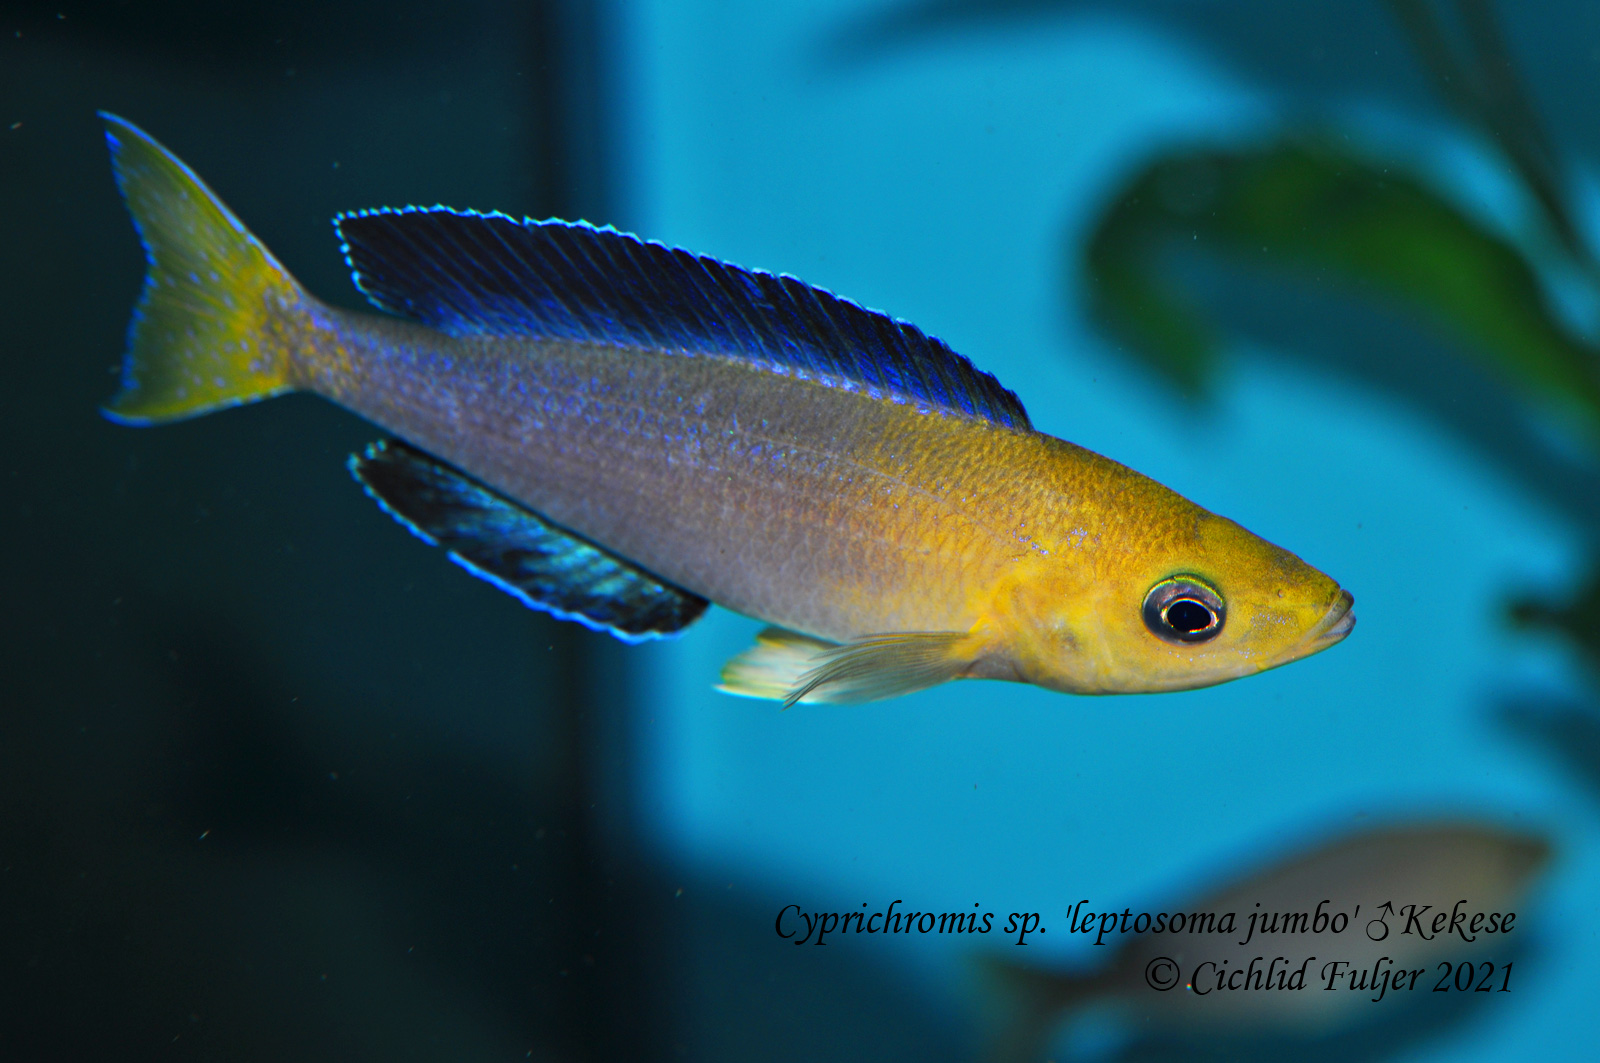 Cyprichromis sp. 'leptosoma jumbo' Kekese